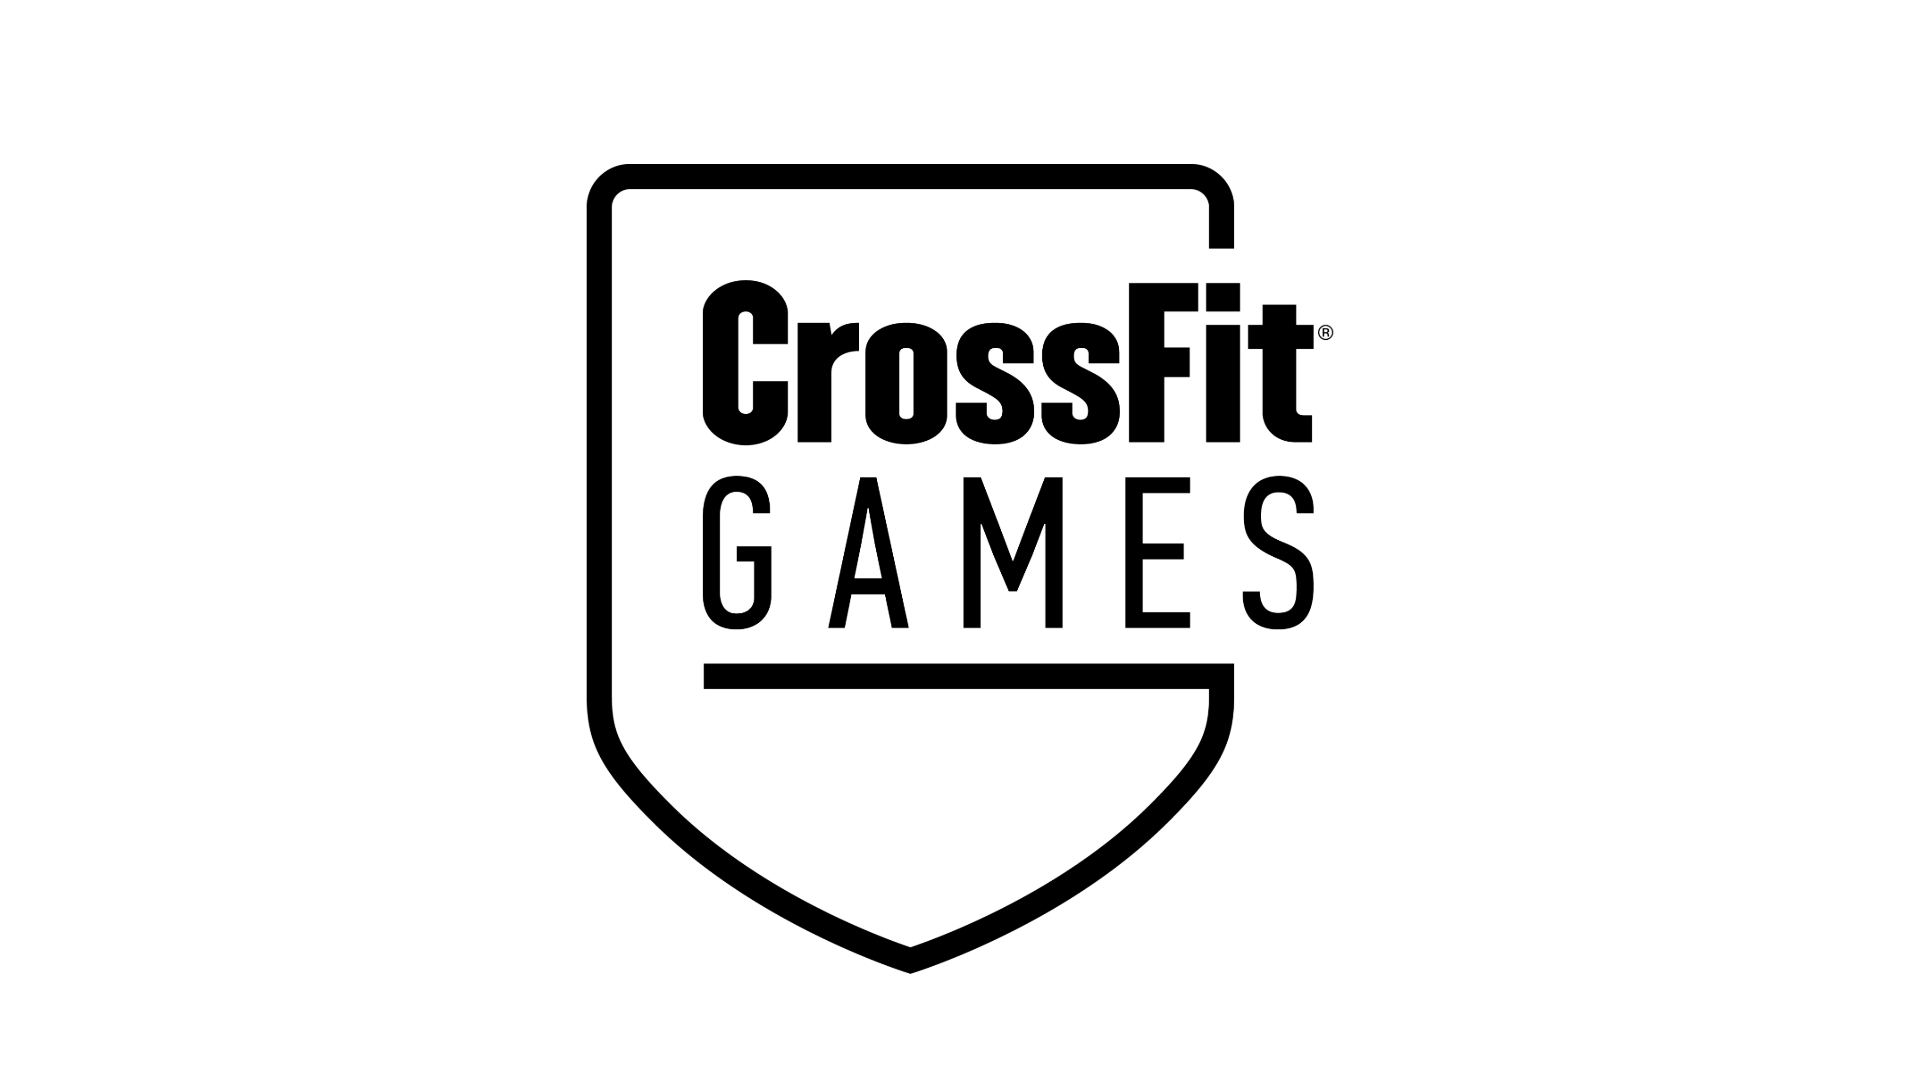 games.crossfit.com